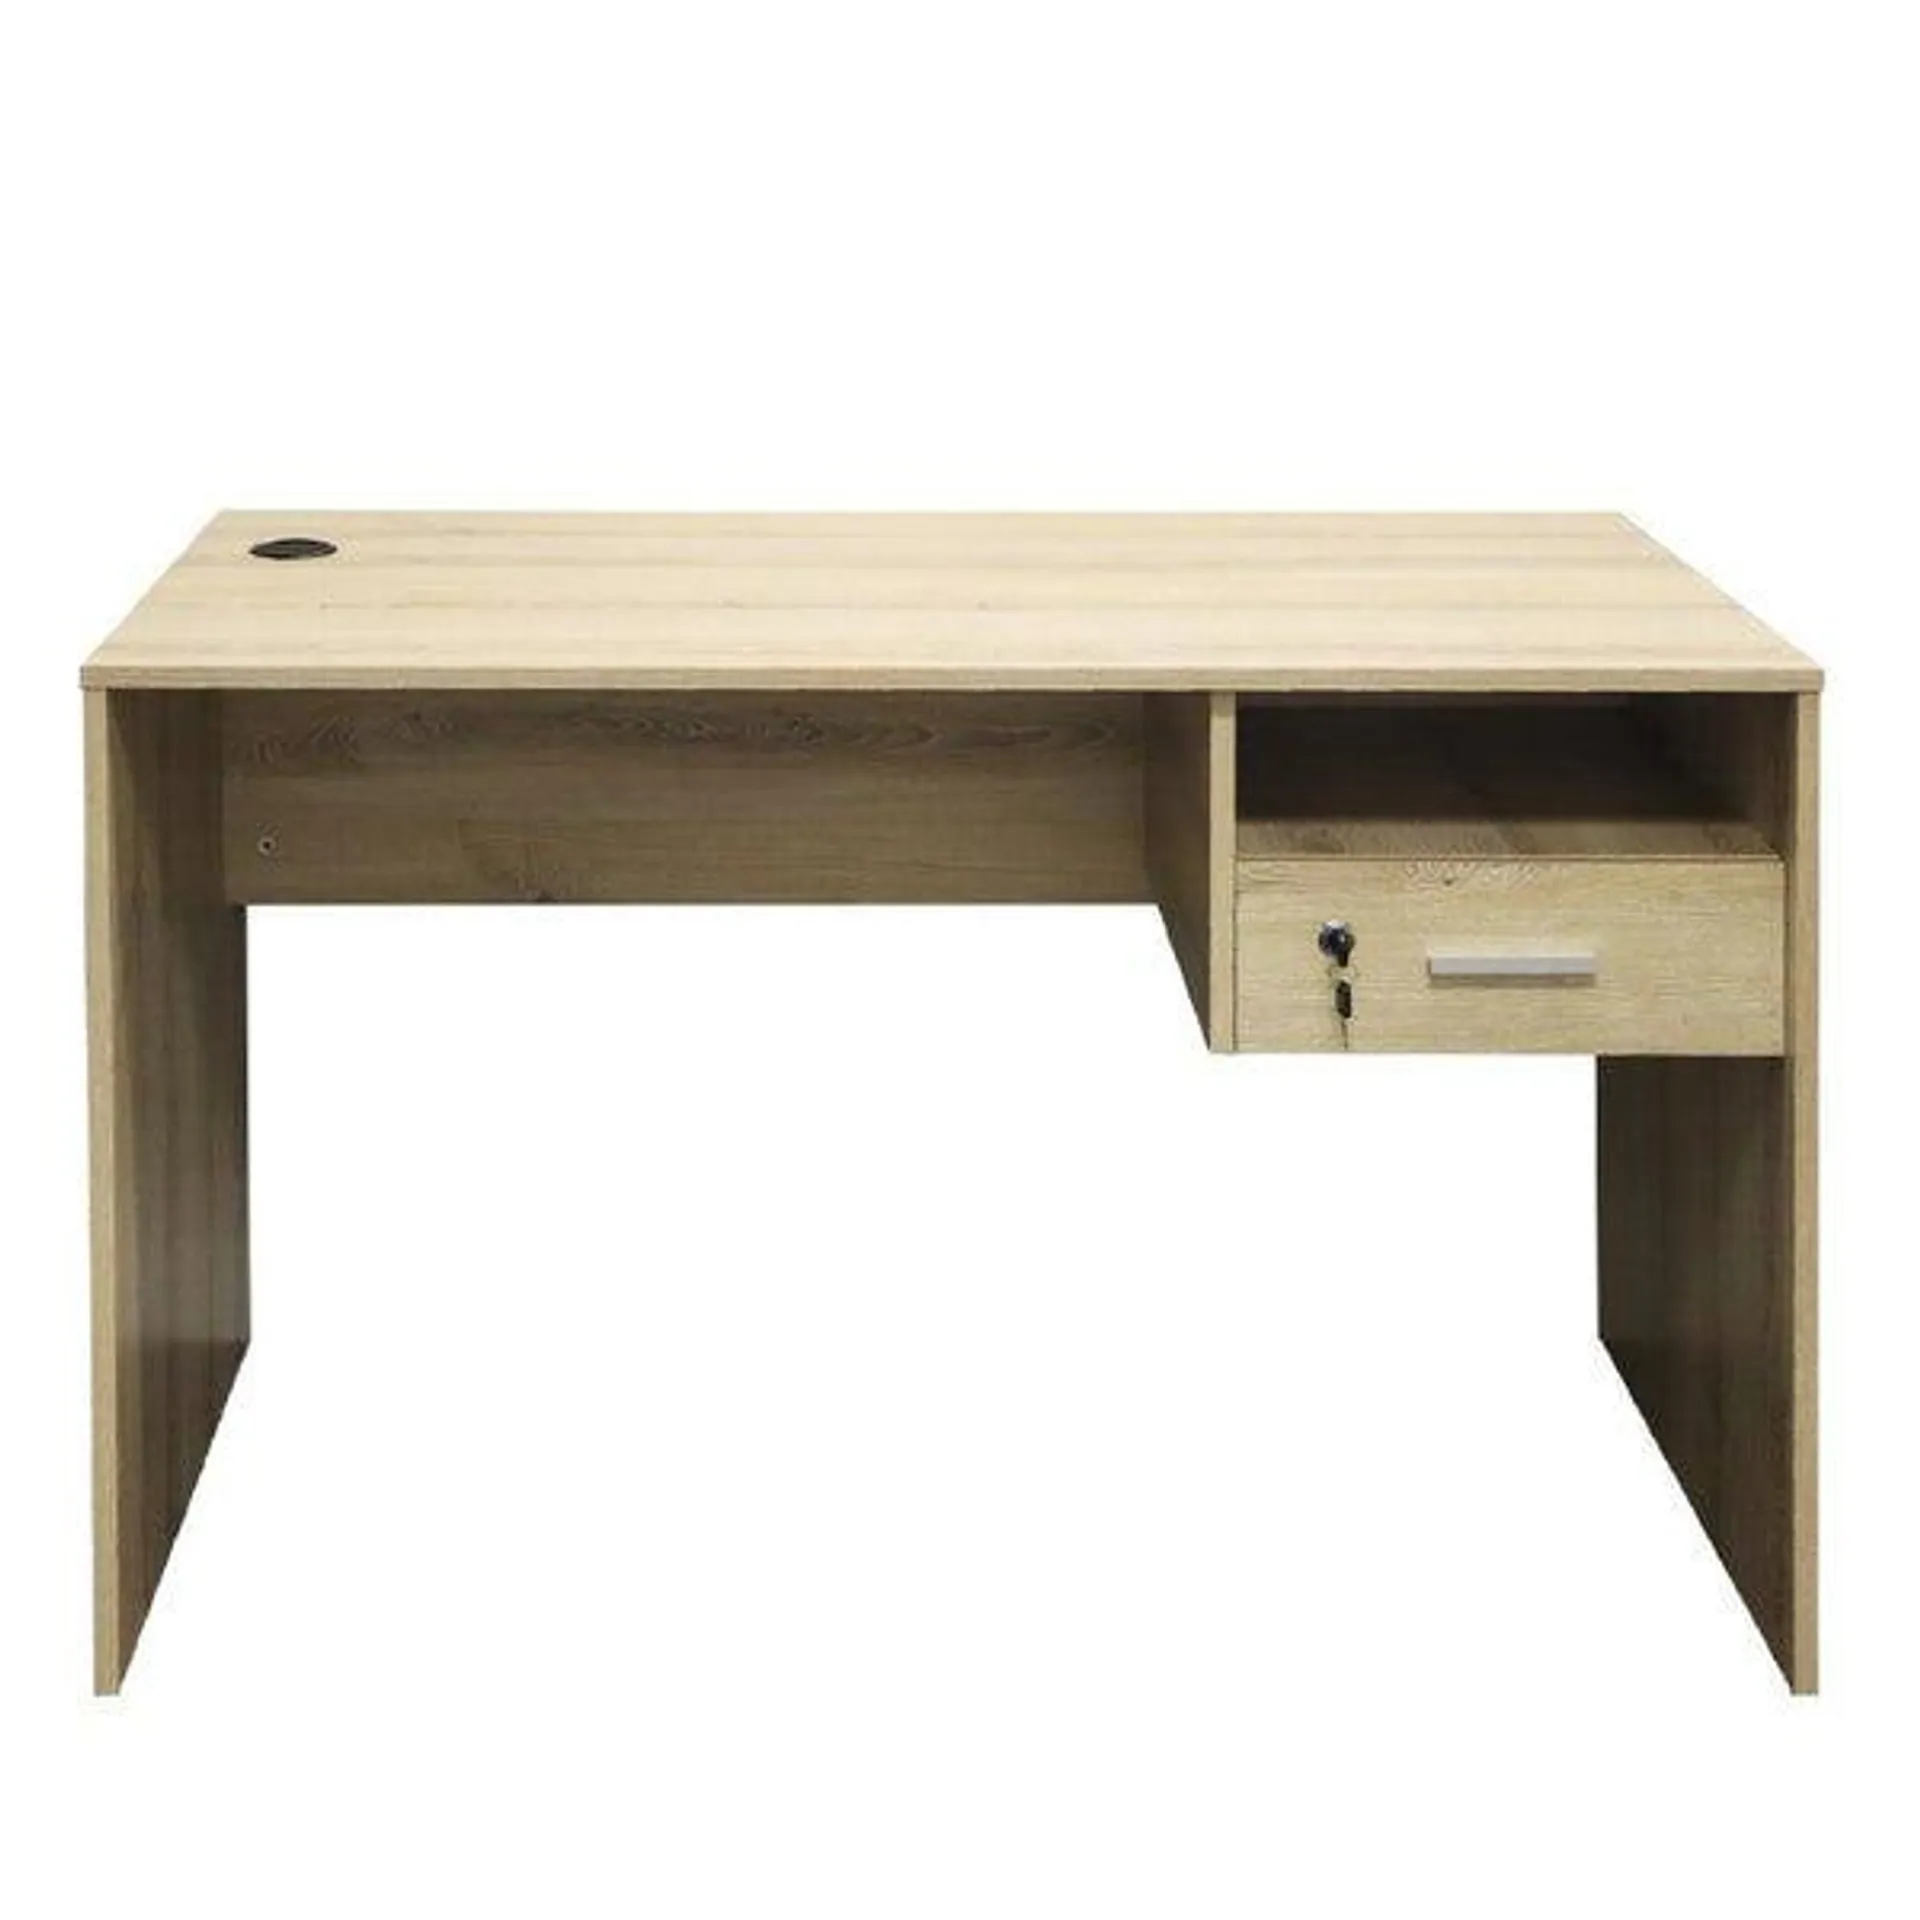 Denver Office Furniture | Office Desk with Single Lockable Drawer | Washed Shale